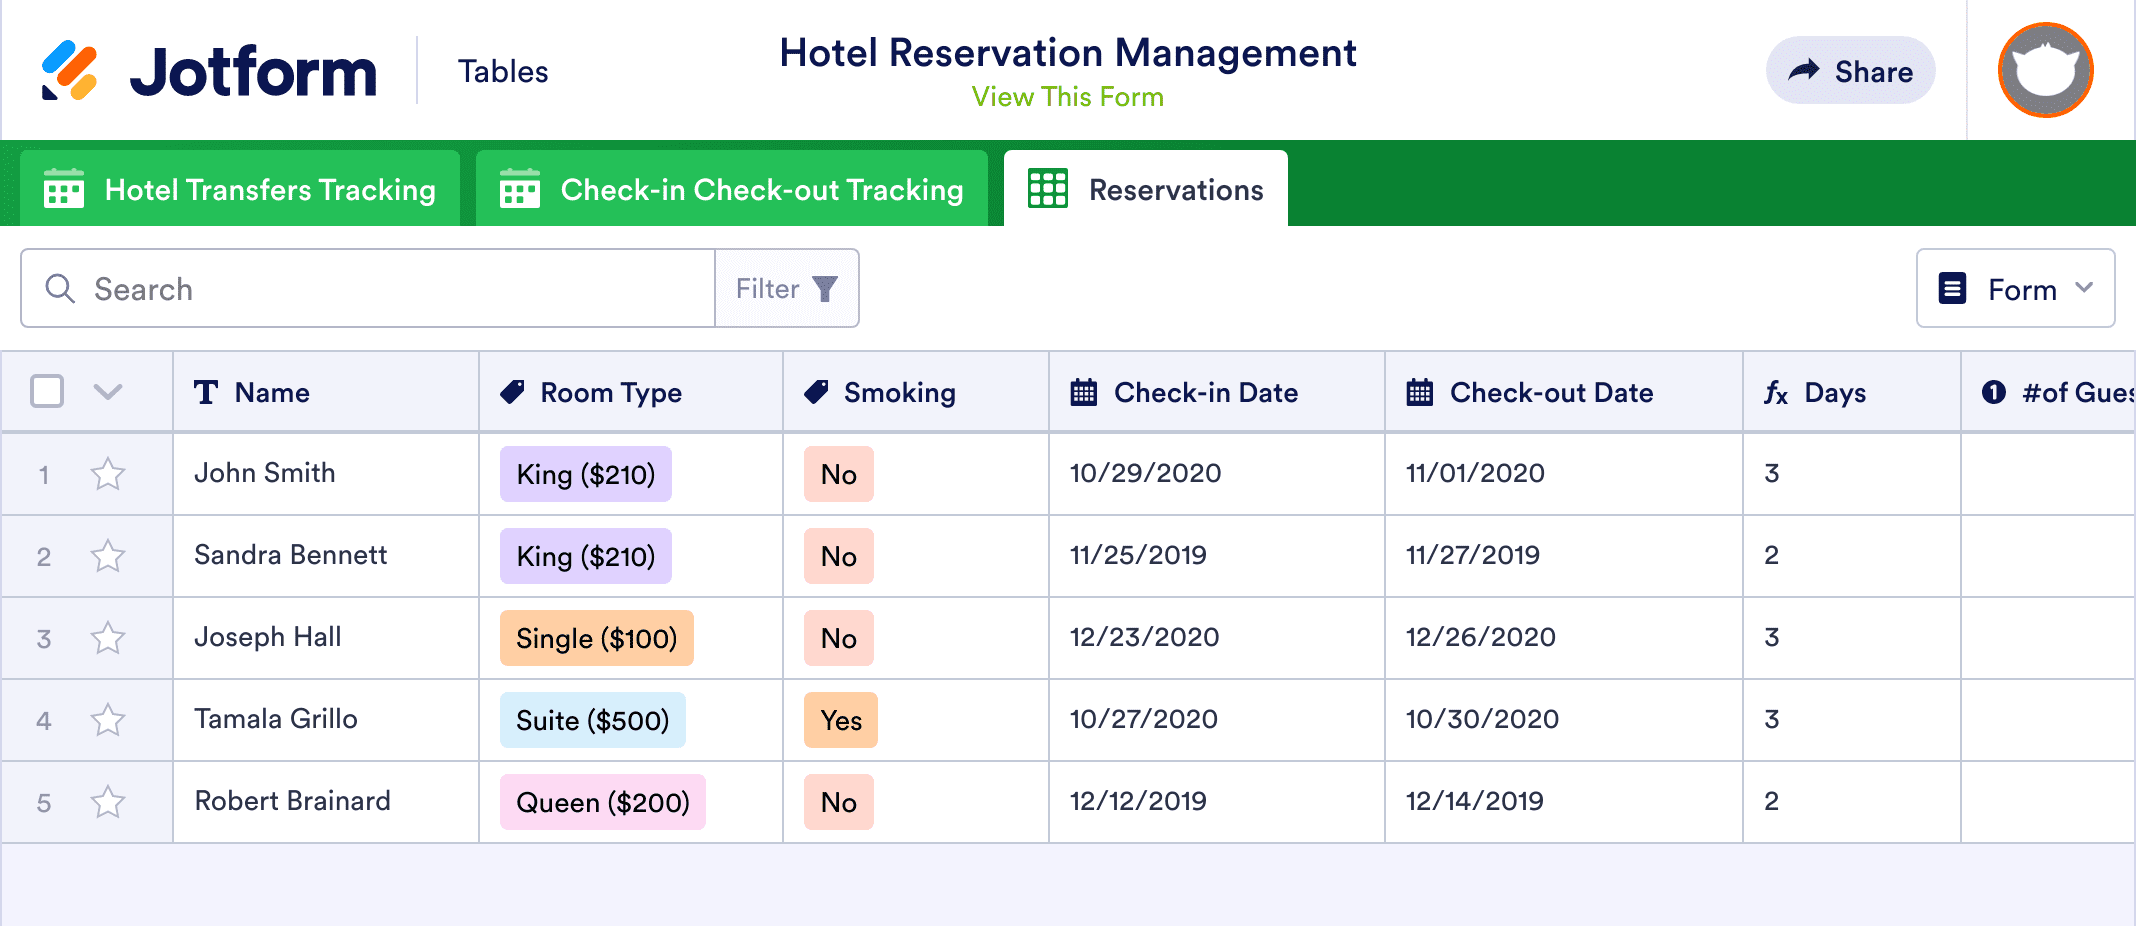 Hotel Reservation Management